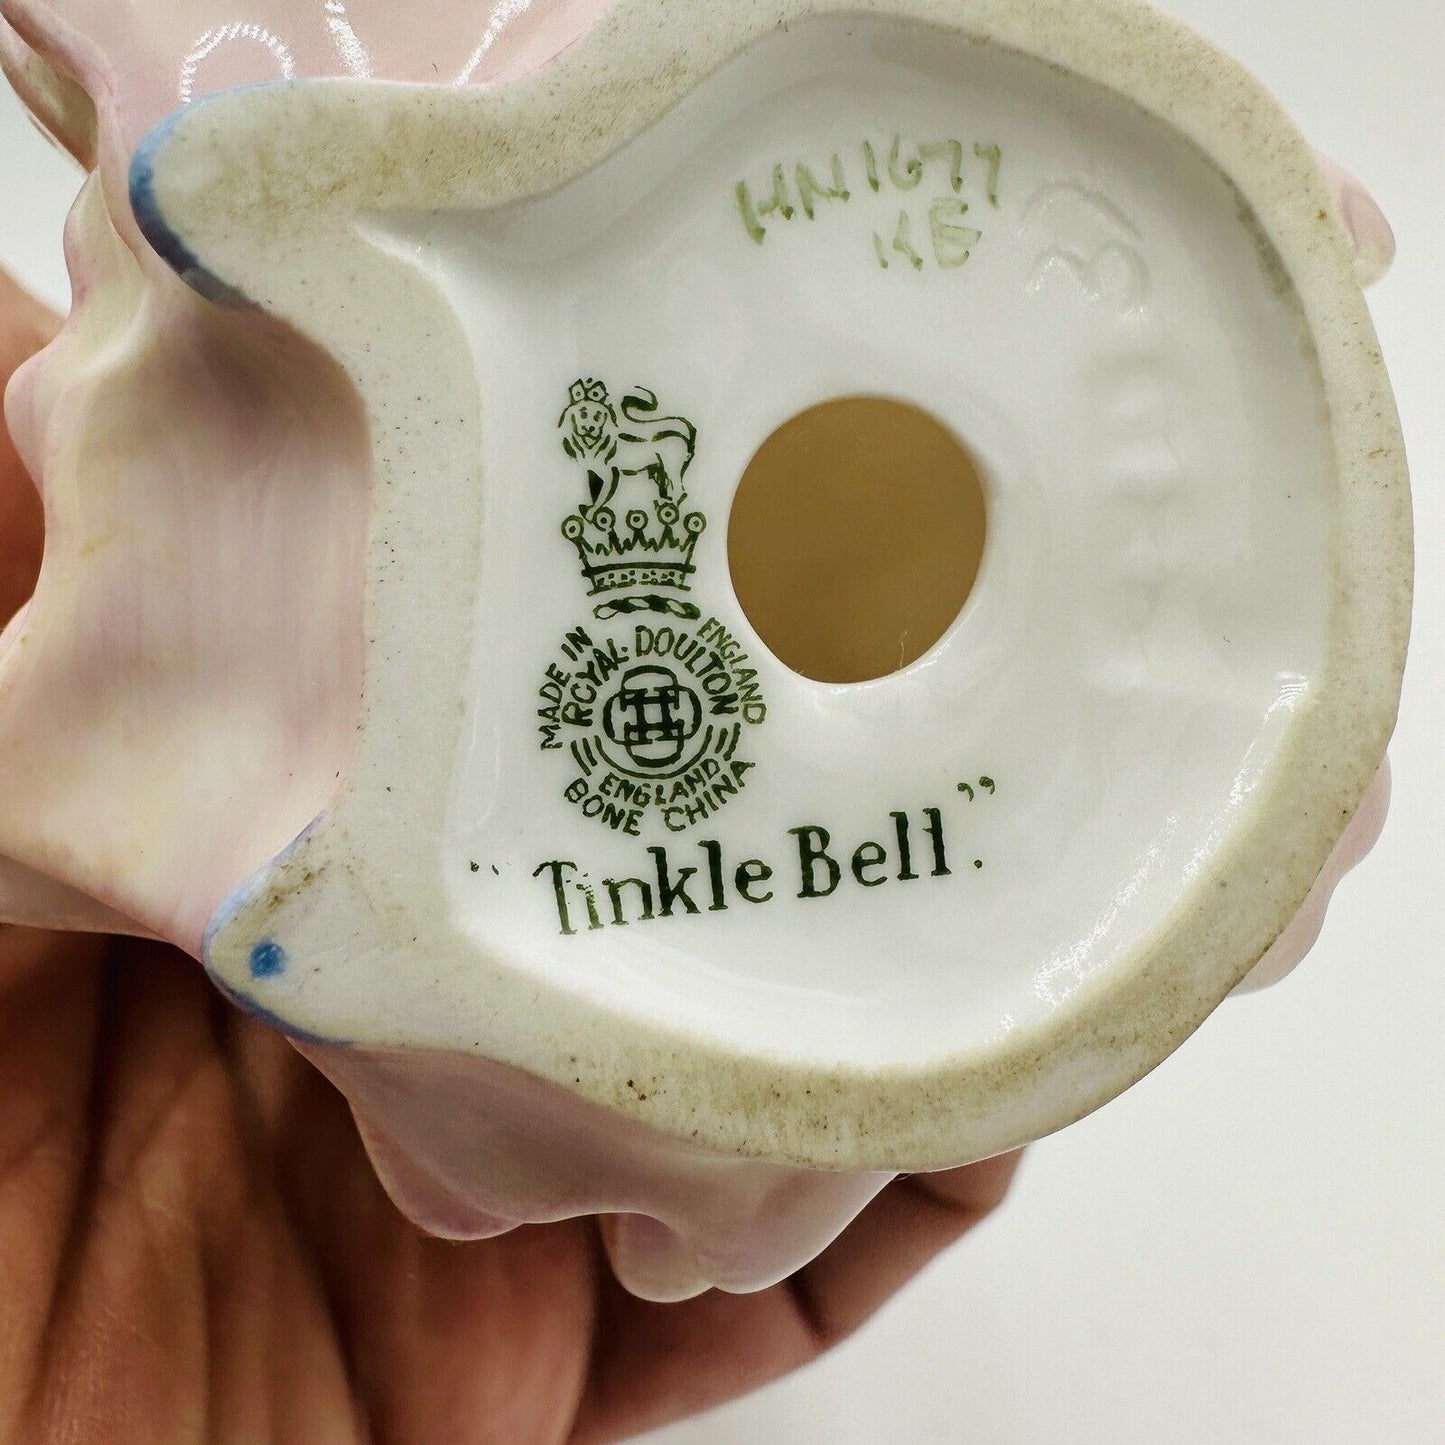 Royal Doulton Figurine Tinkle Bell HN 1677 Porcelain England Pink Girl Basket